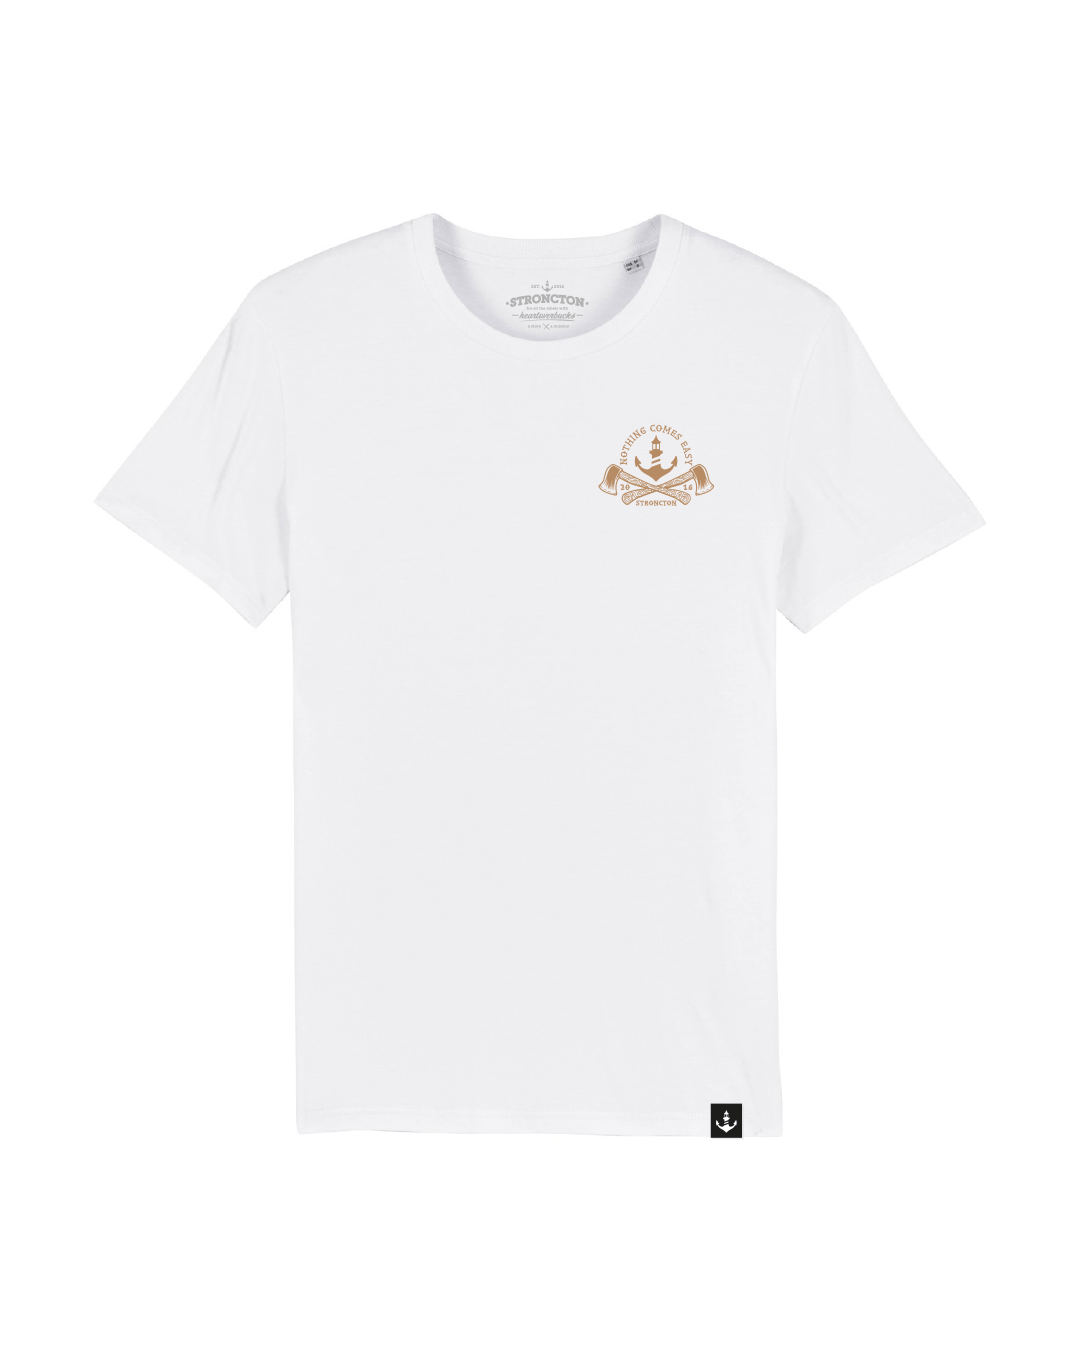 N.C.E. T-Shirt - White/Brown